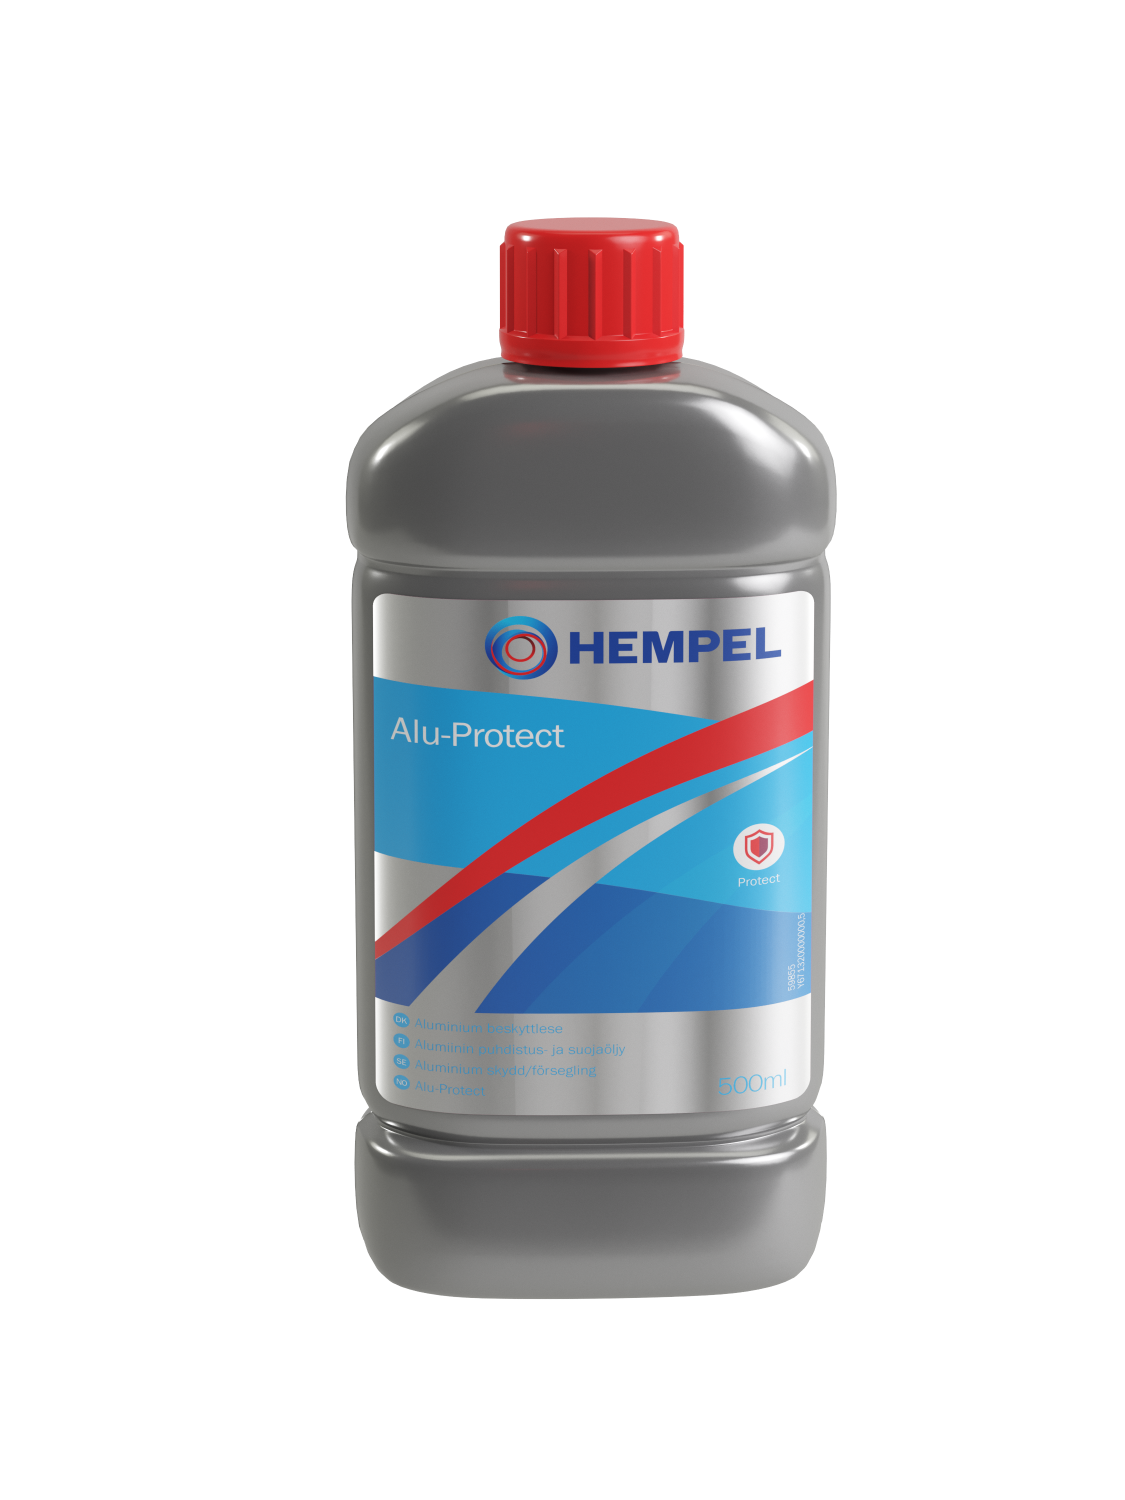 Hempel Alu-protect 500 ml.